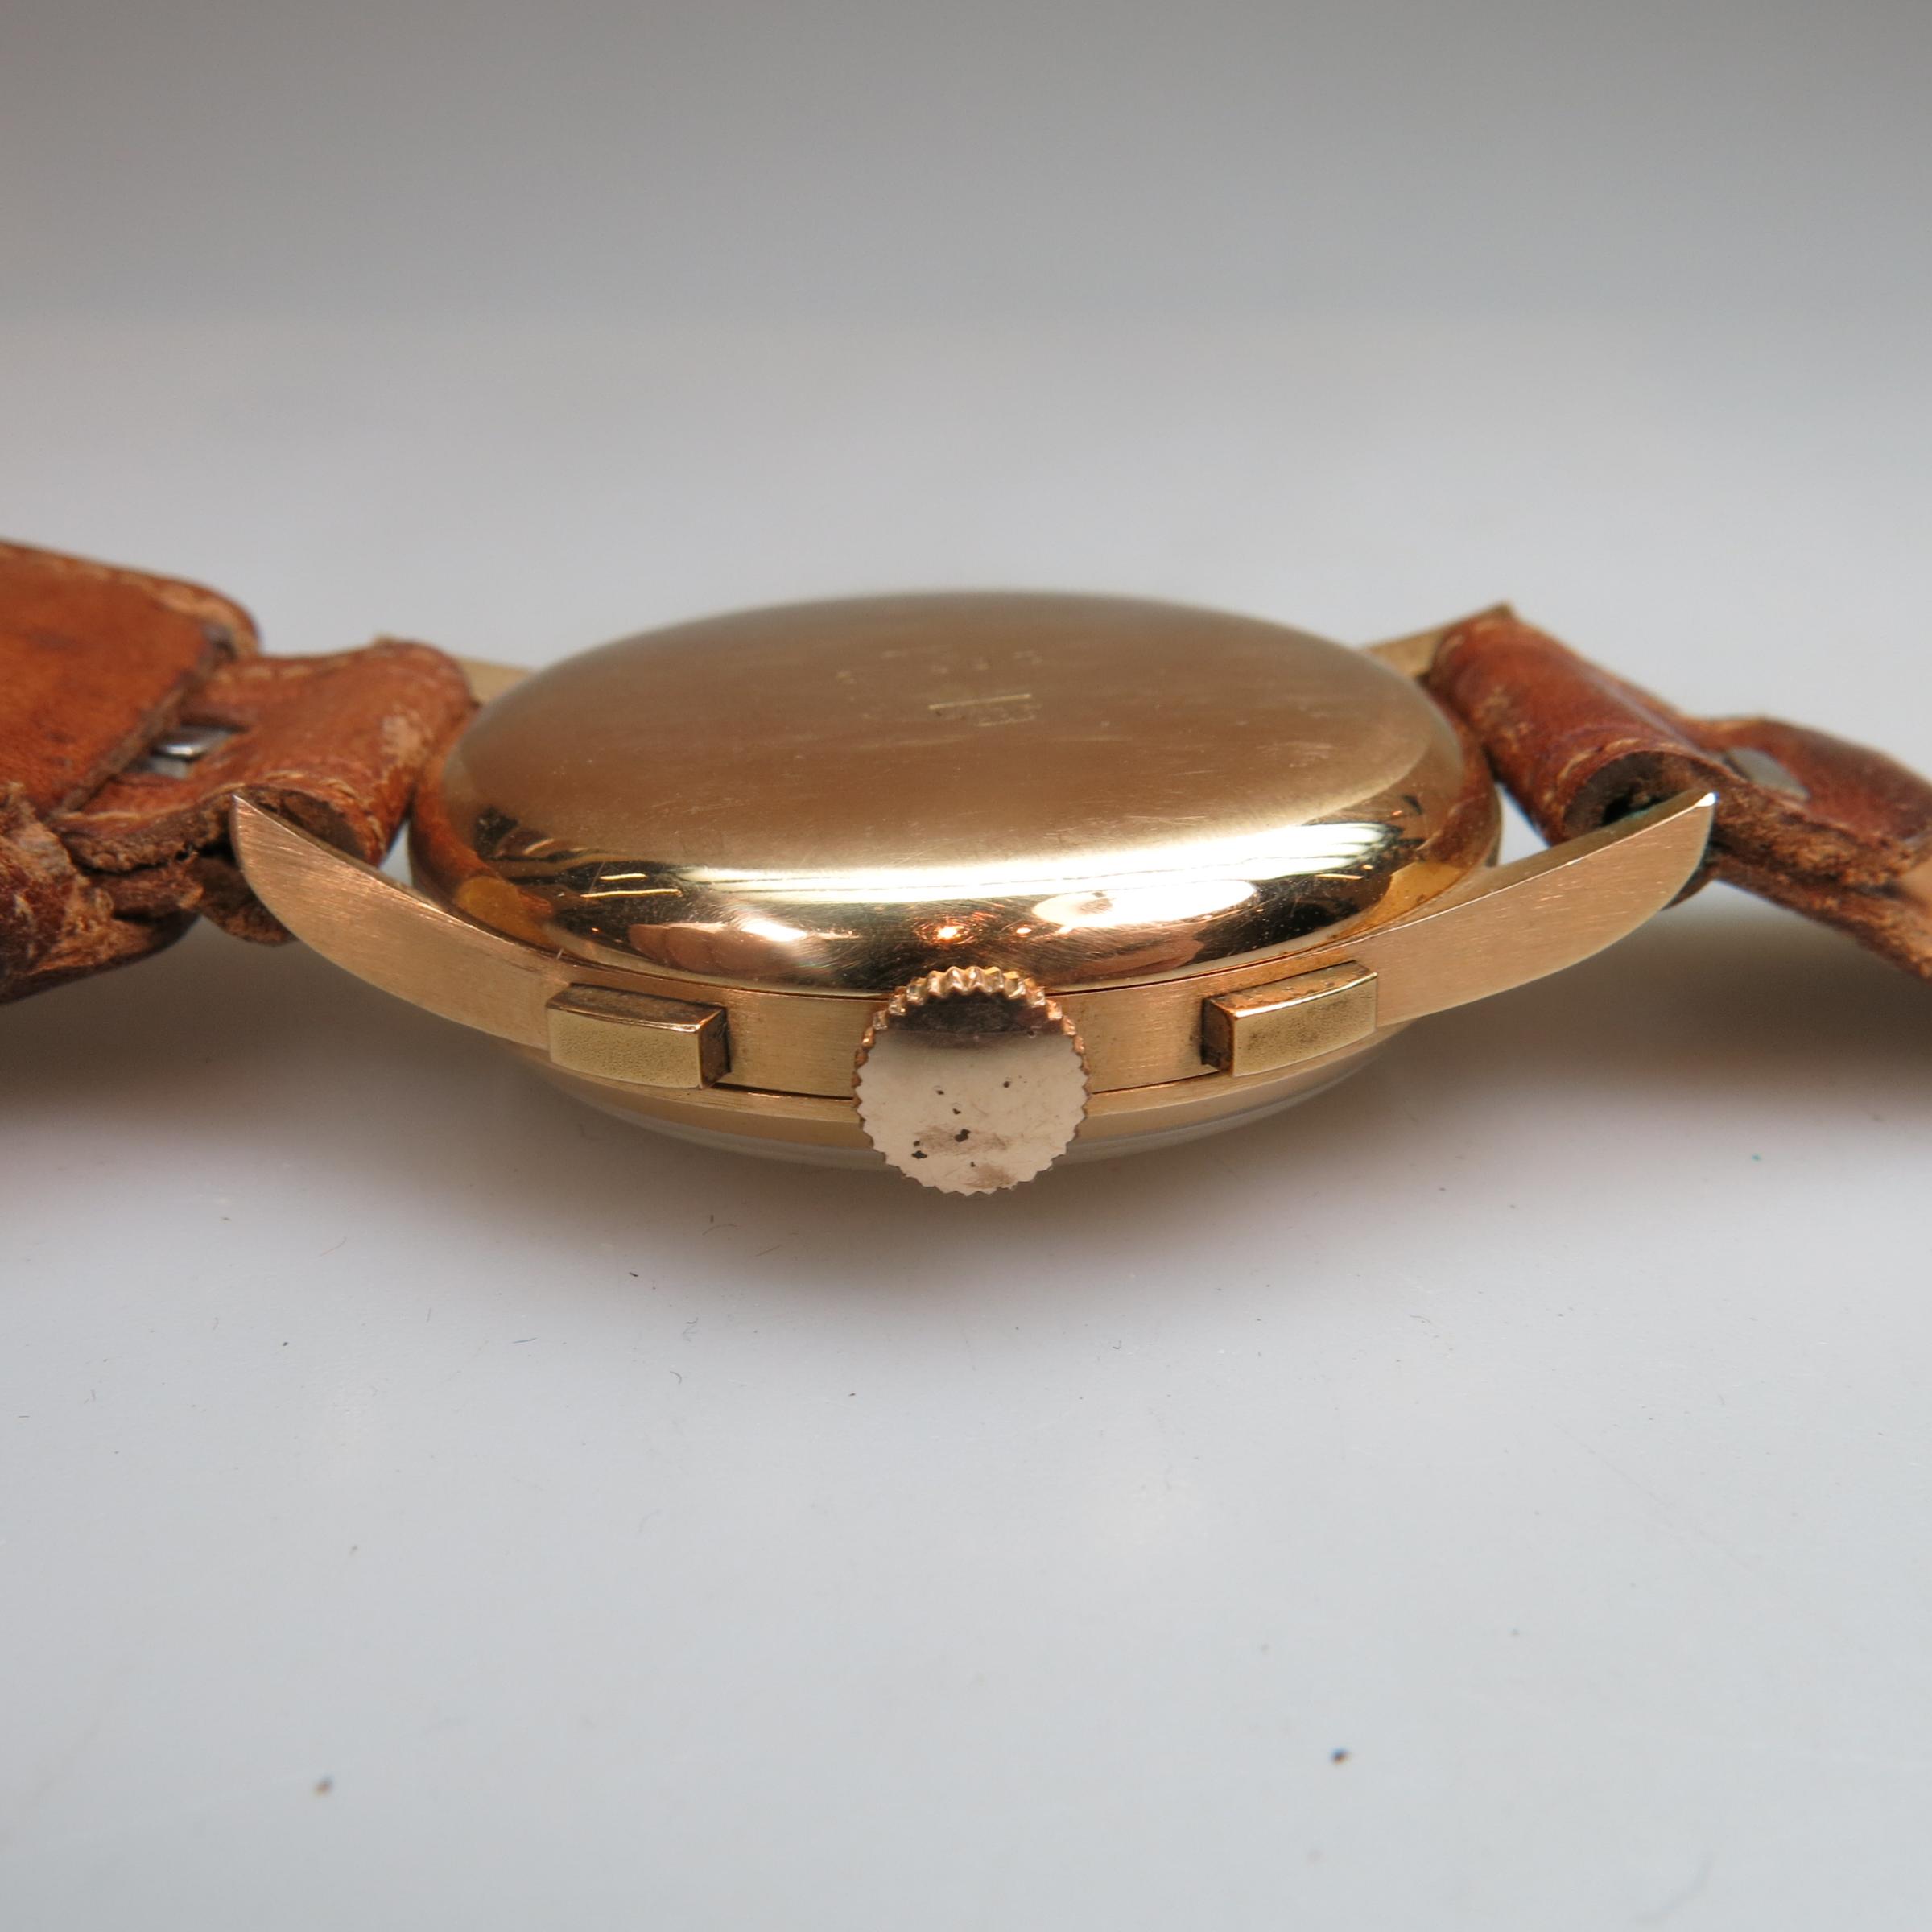 Egona Watch Co. Wristwatch With Chronograph